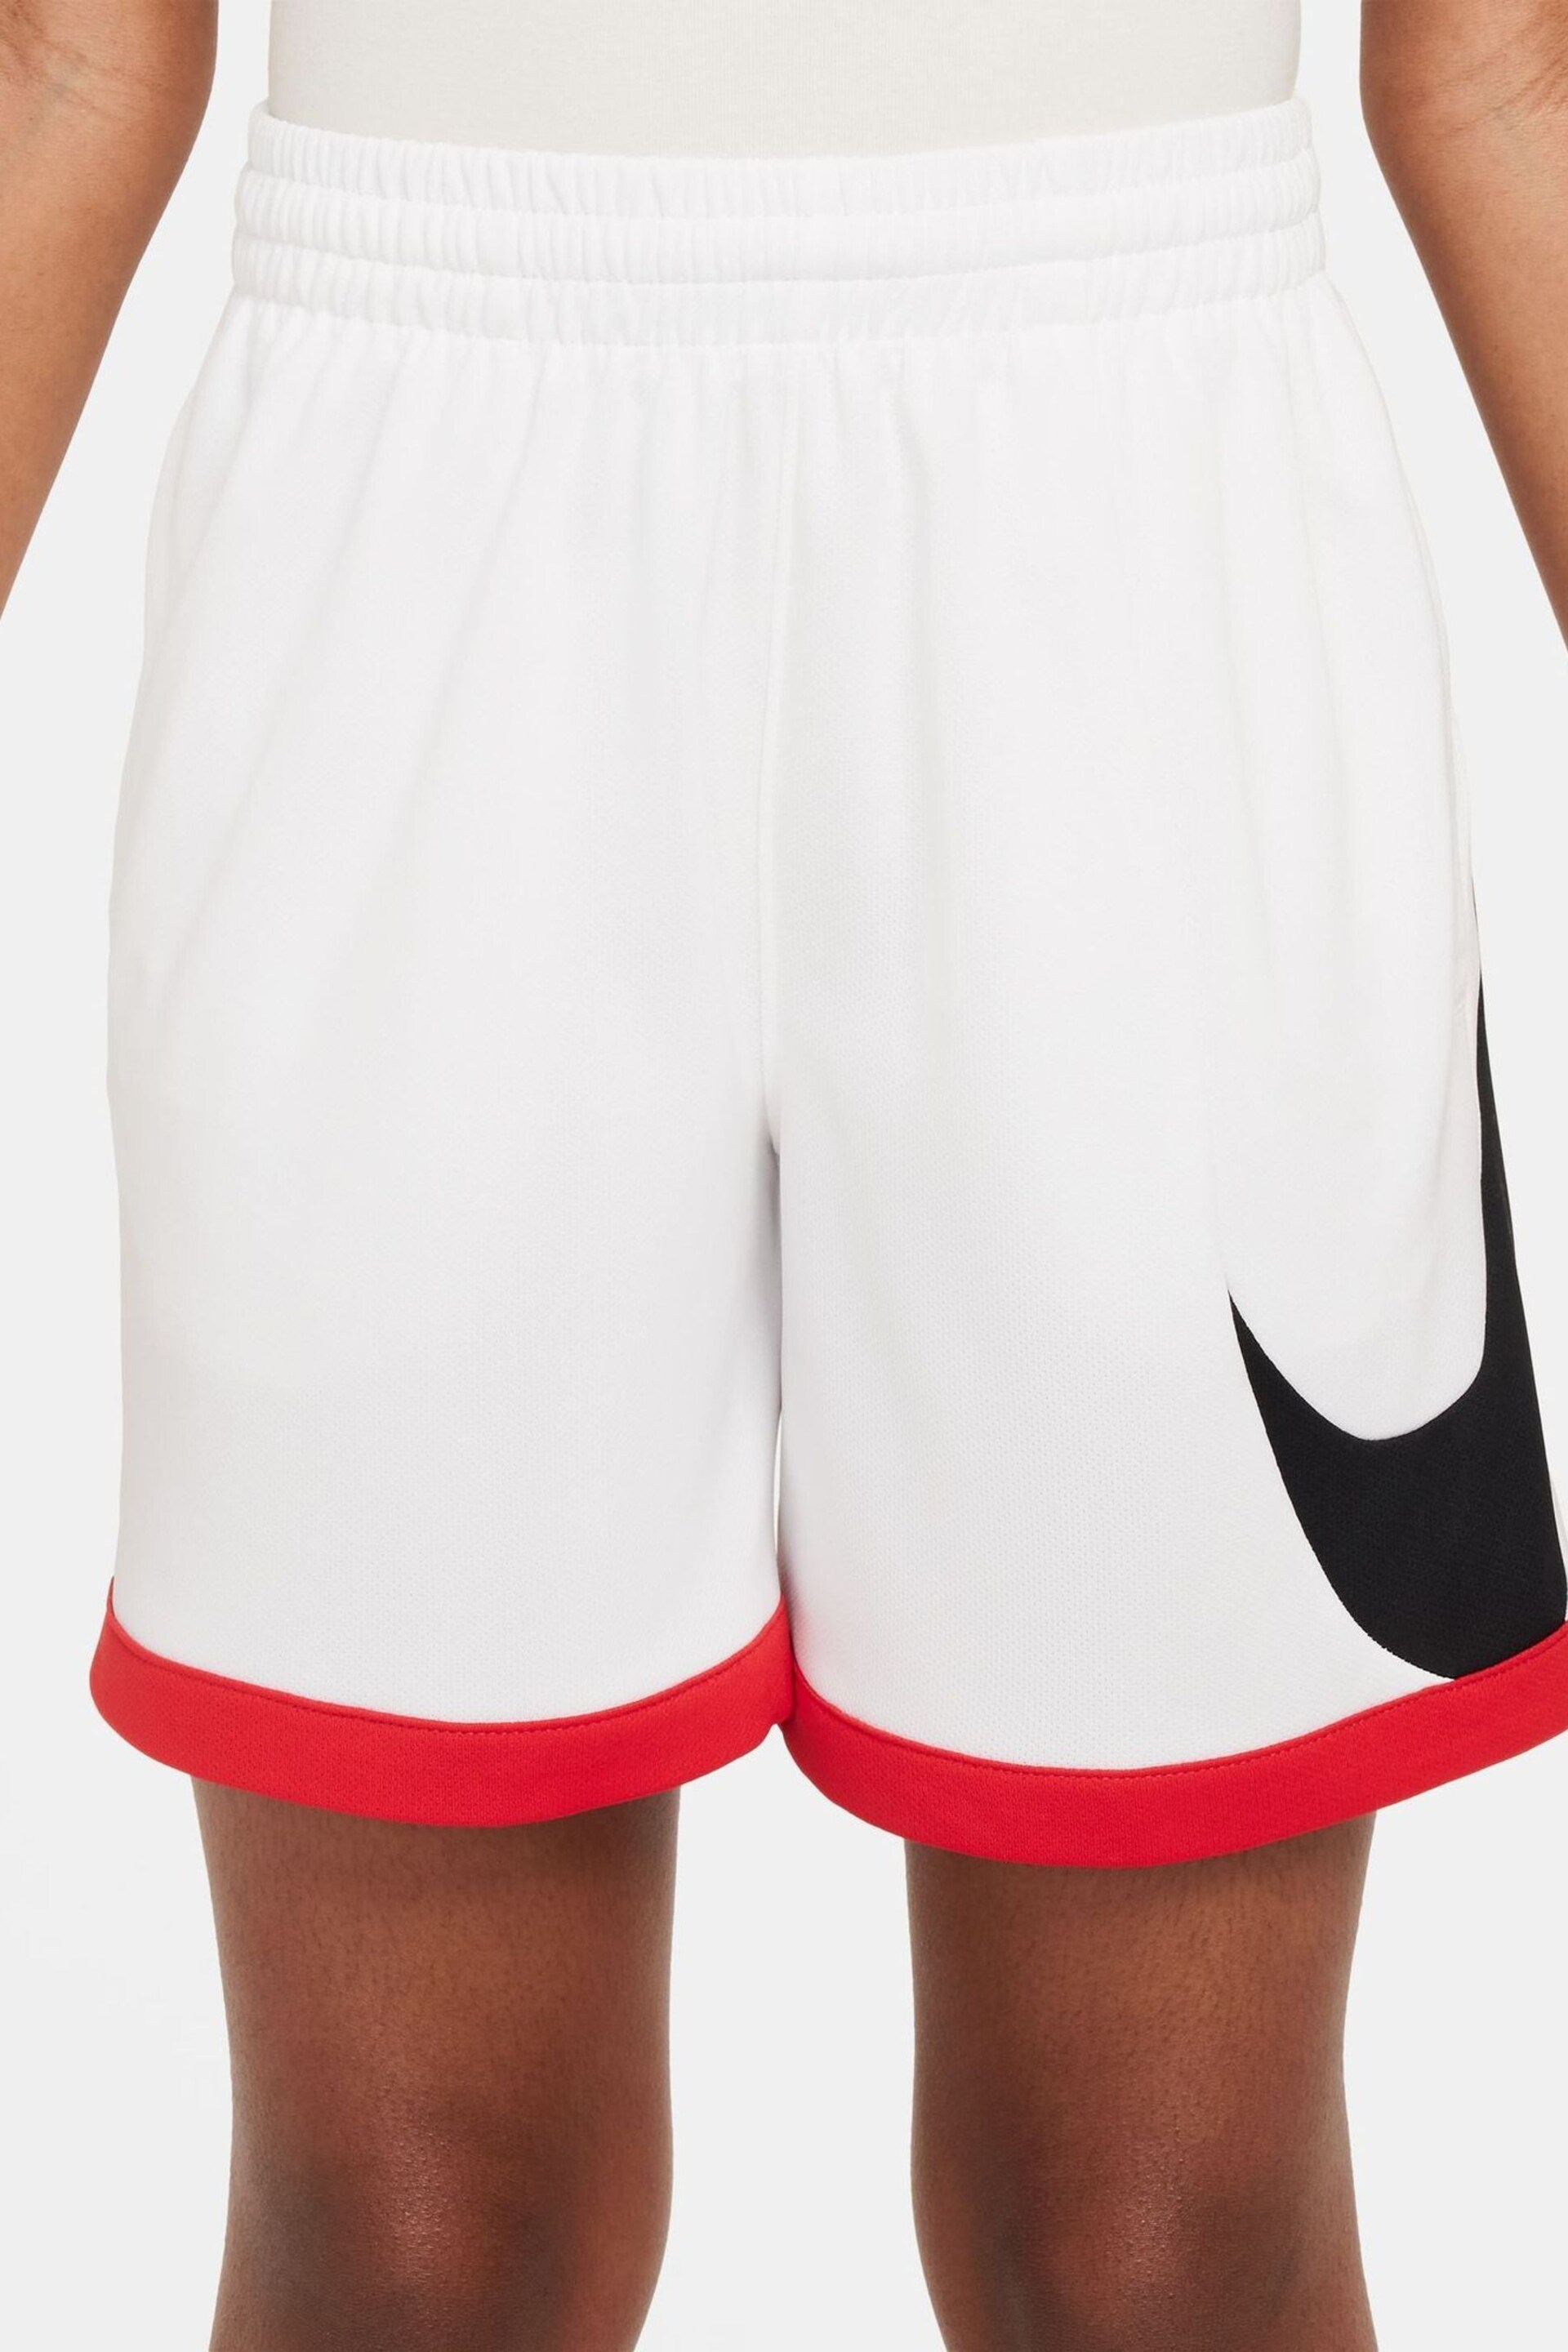 Nike White Swoosh Multi+ Dri-FIT Shorts - Image 1 of 7